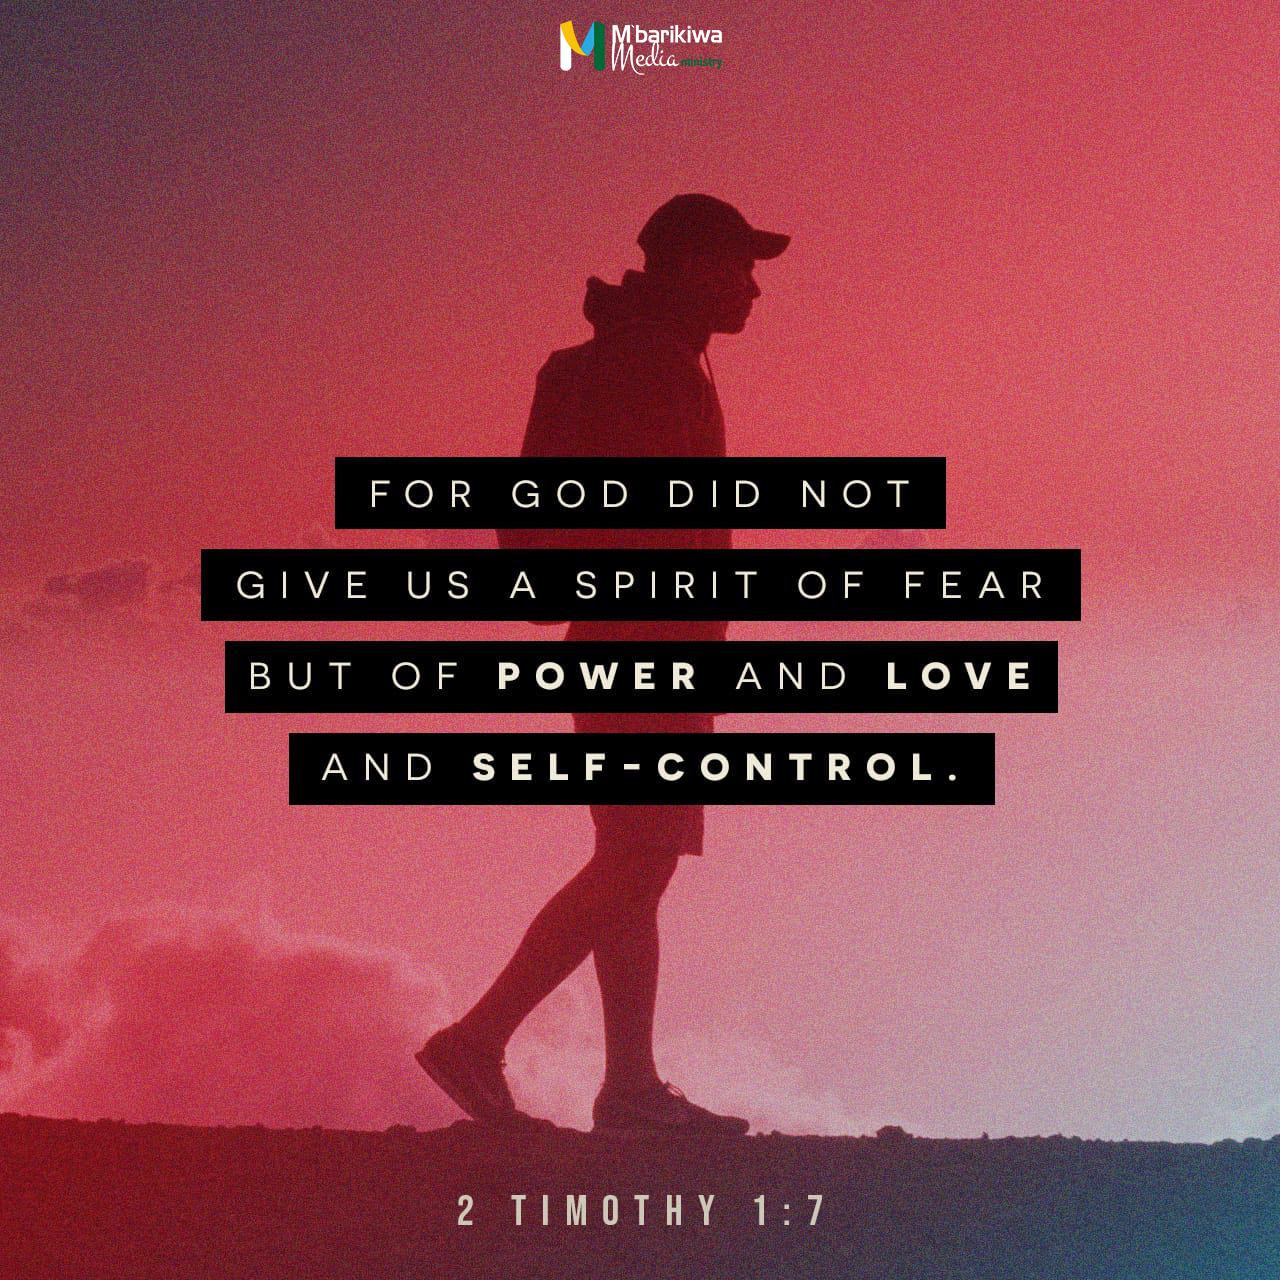 2 Timothy 1:7 NIV